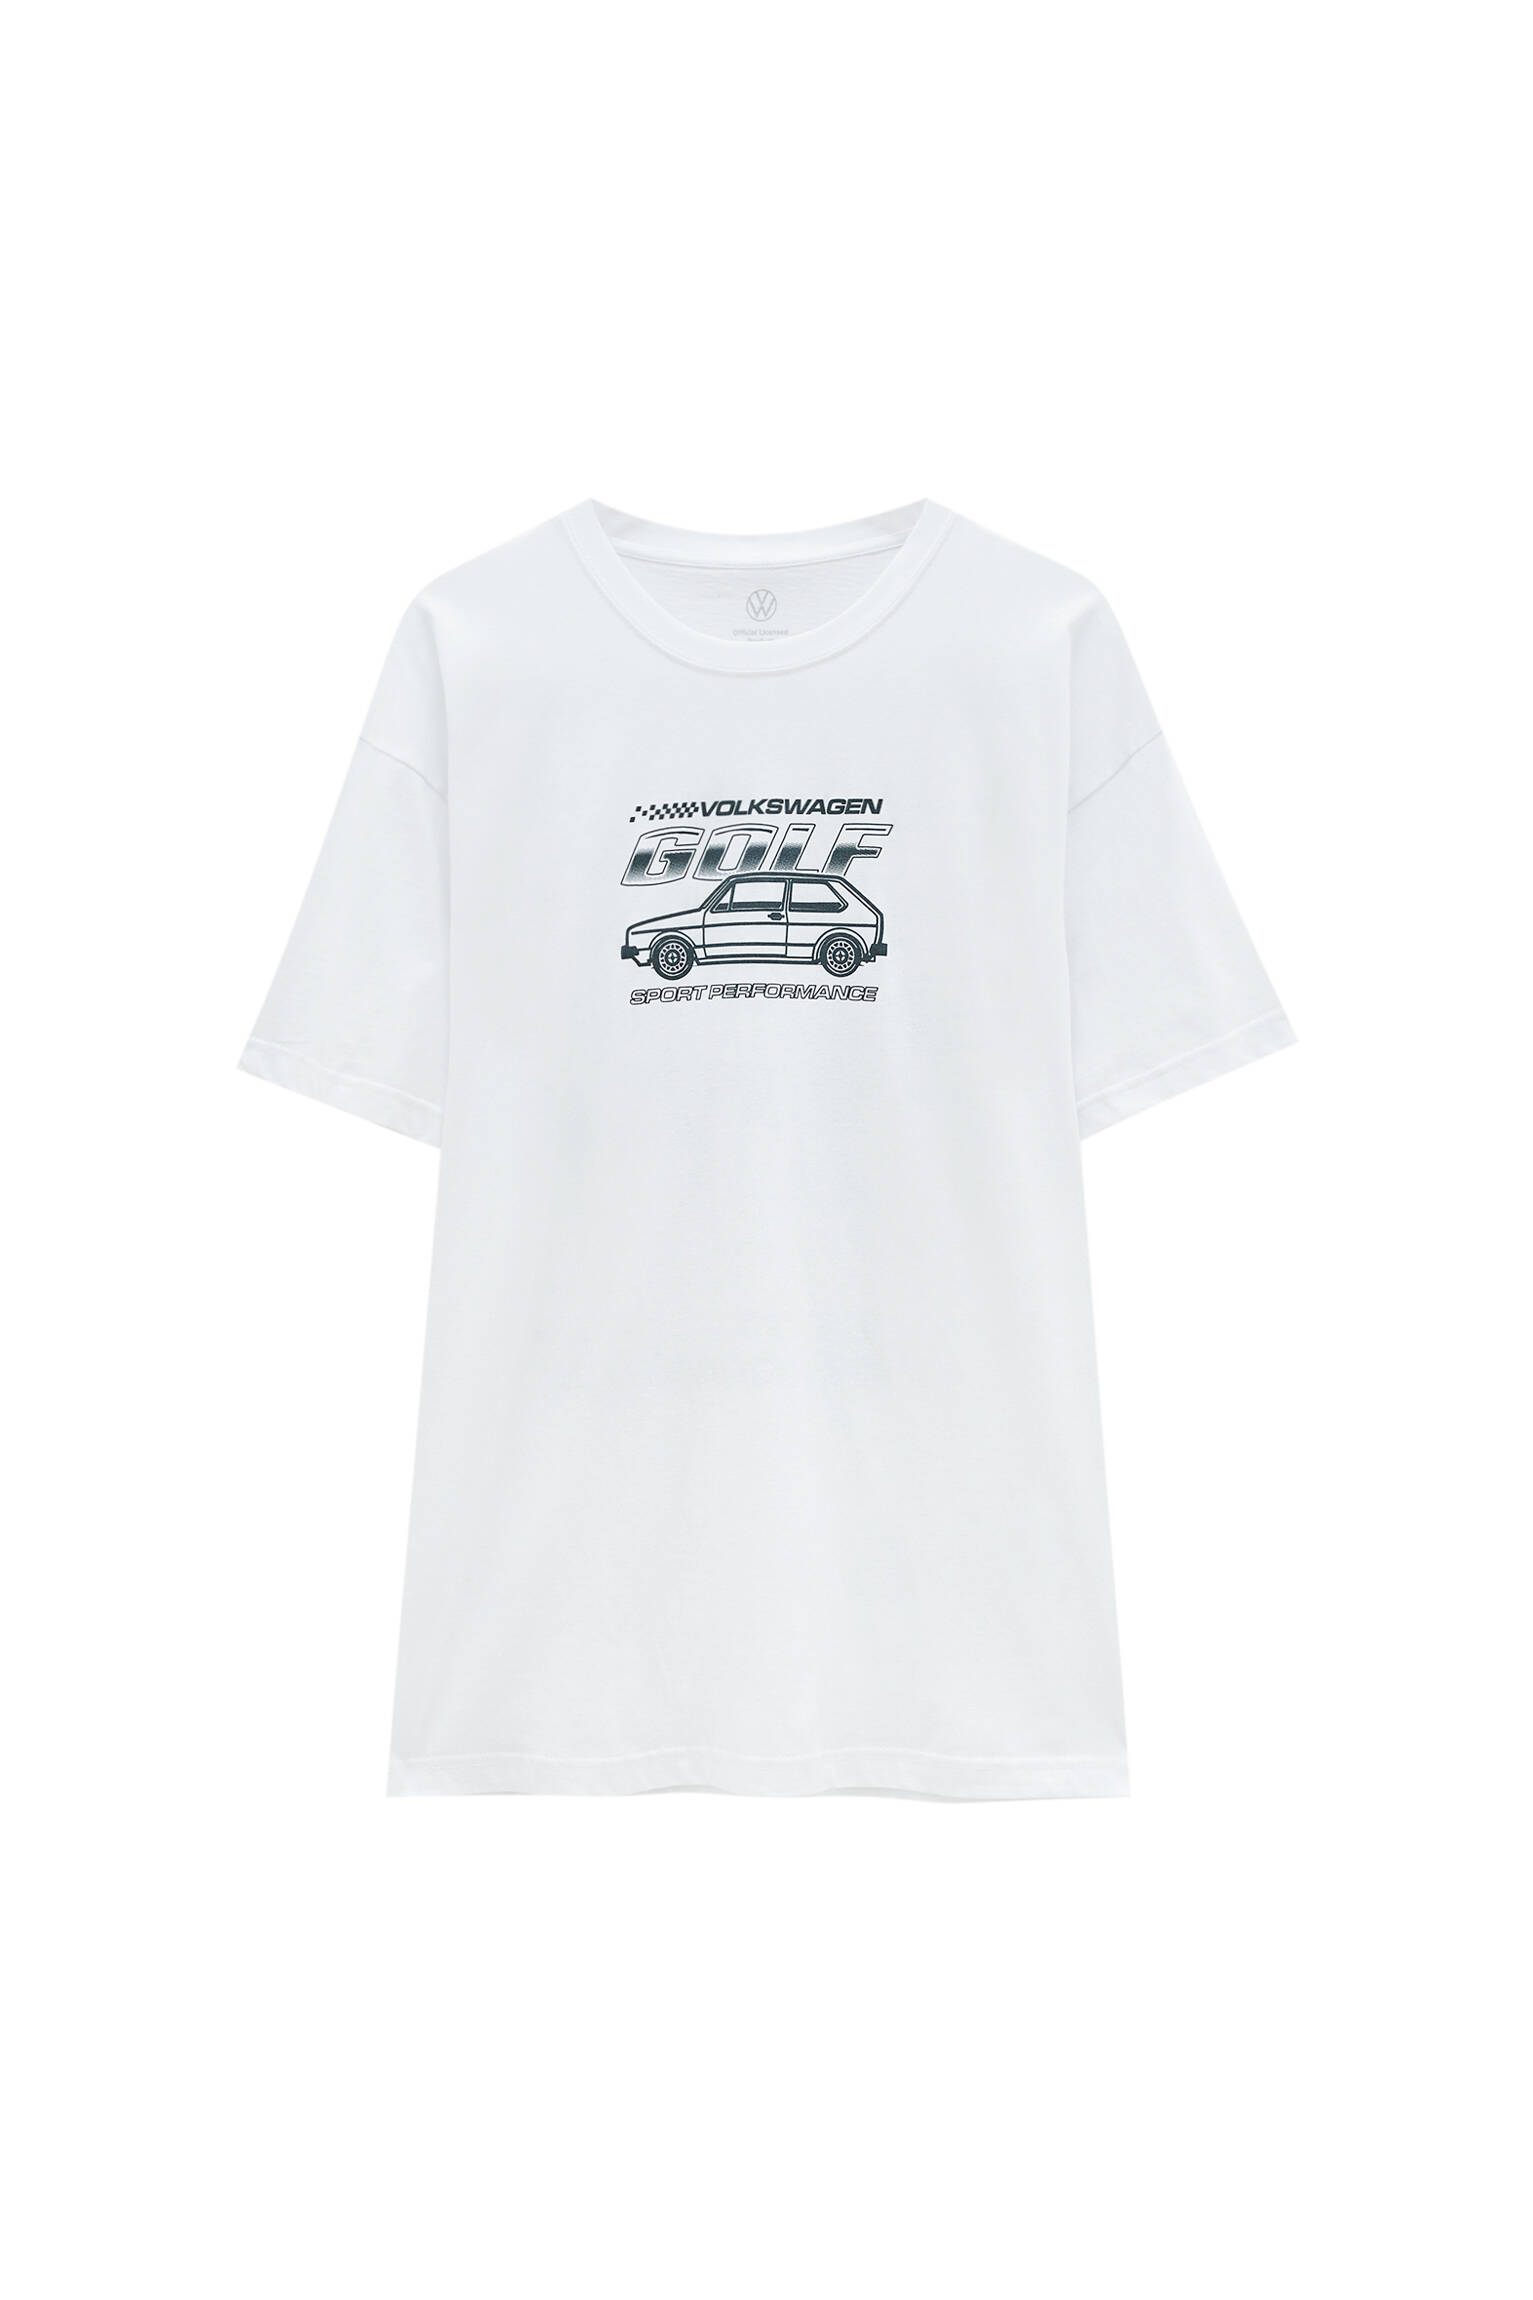 Pull&bear Homme T-shirt Blanc En Coton à Manches Courtes Et Col Rond, Avec Illustration Contrastante